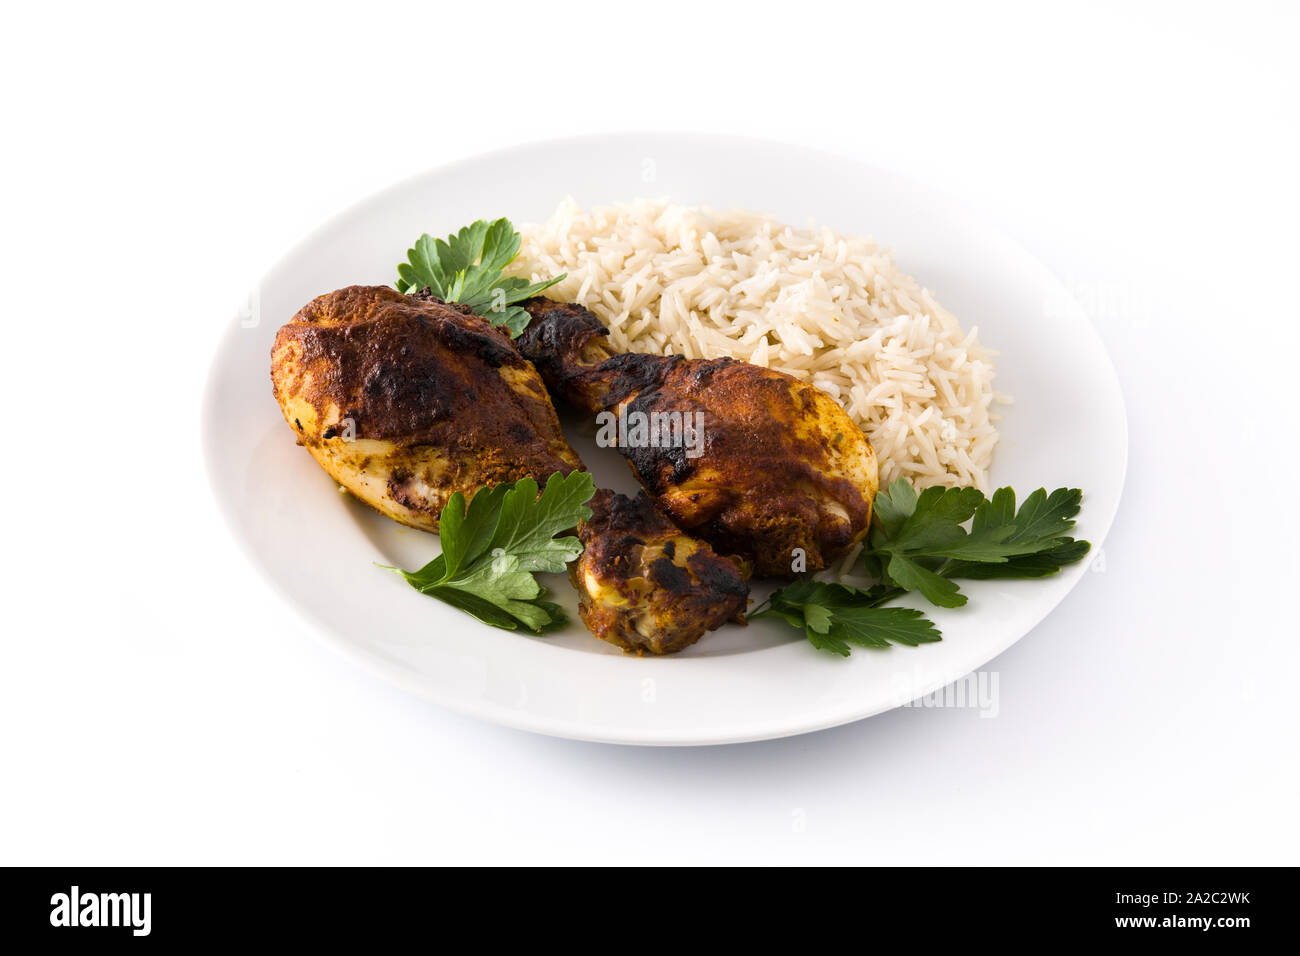 Poulet tandoori grillés avec du riz basmati dans la plaque, isolé sur fond blanc Banque D'Images